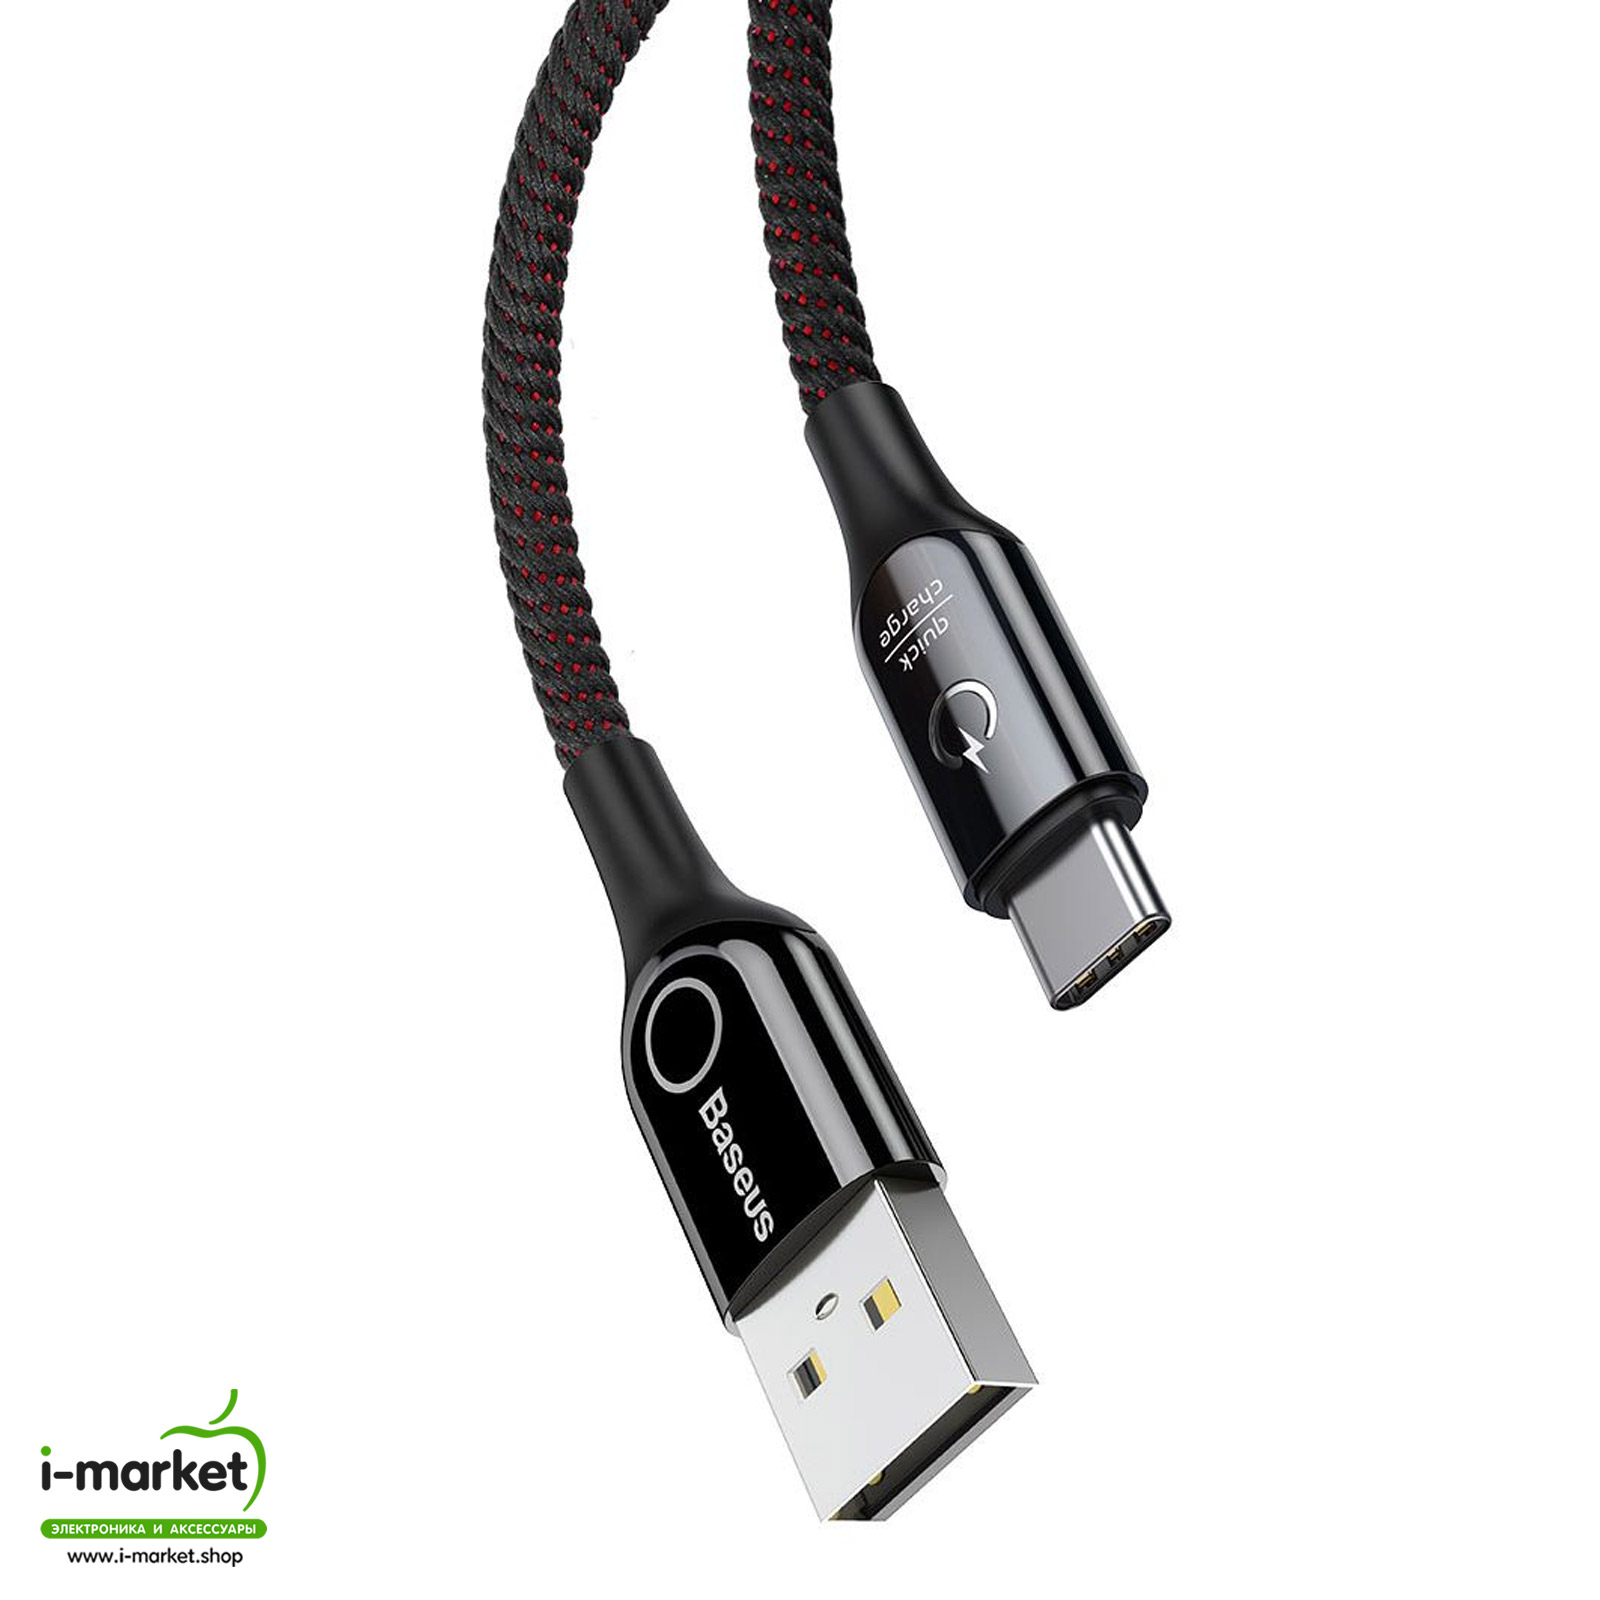 Кабель Type-C aka USB-C, 3A, длина 1 метр, Baseus C-shaped Light Intelligent power-off Cable, цвет черный